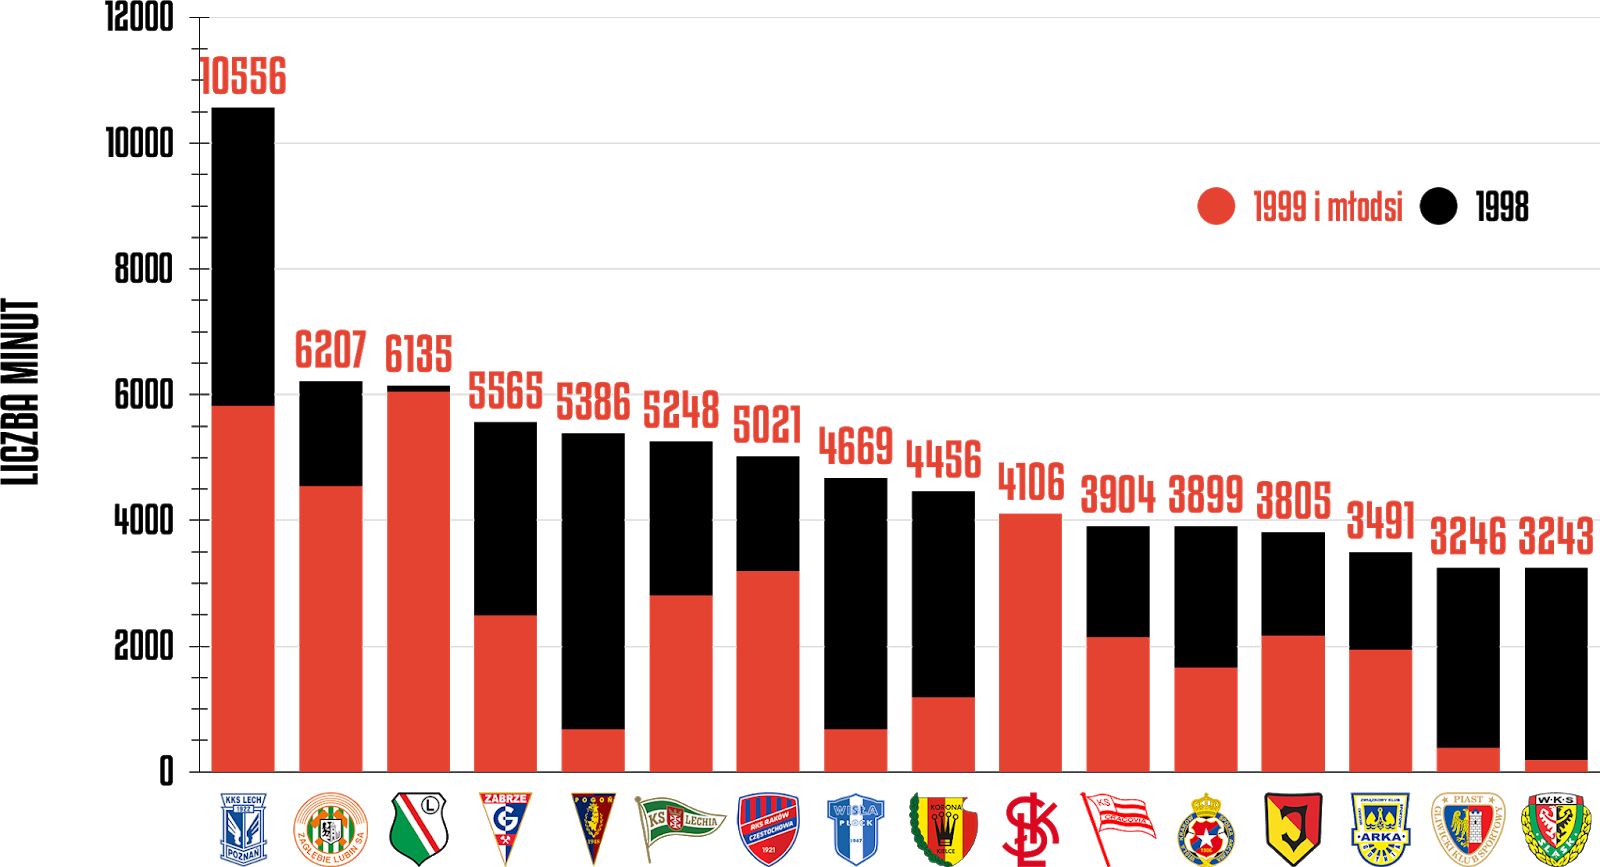 Klasyfikacja klubów pod względem rozegranych minut przez młodzieżowców po 35 kolejkach PKO Ekstraklasy<br><br>Źródło: Opracowanie własne na podstawie ekstrastats.pl<br><br>graf. Bartosz Urban